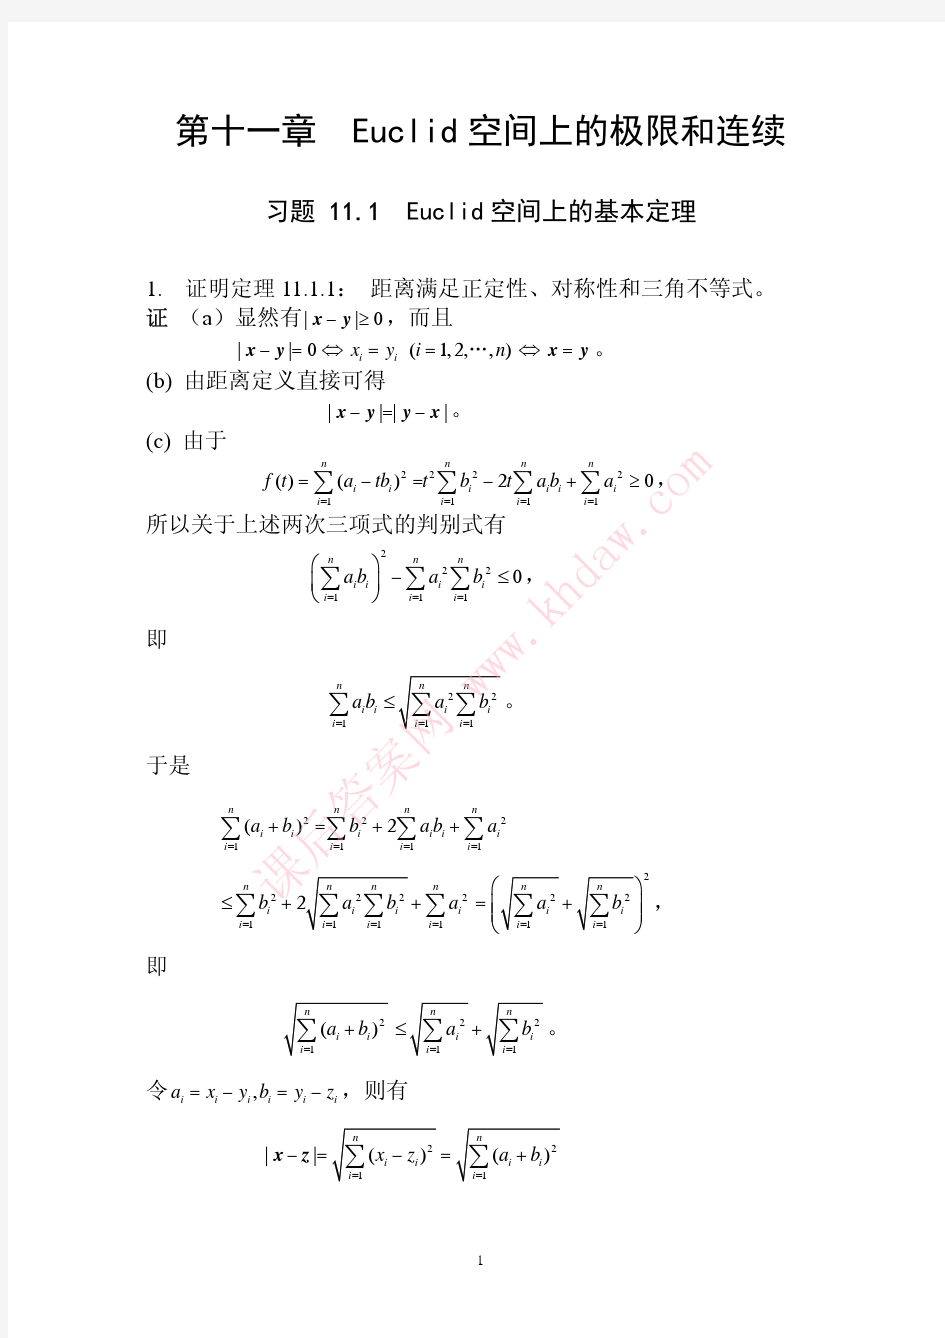 数学分析课后习题答案--高教第二版(陈纪修)--11章